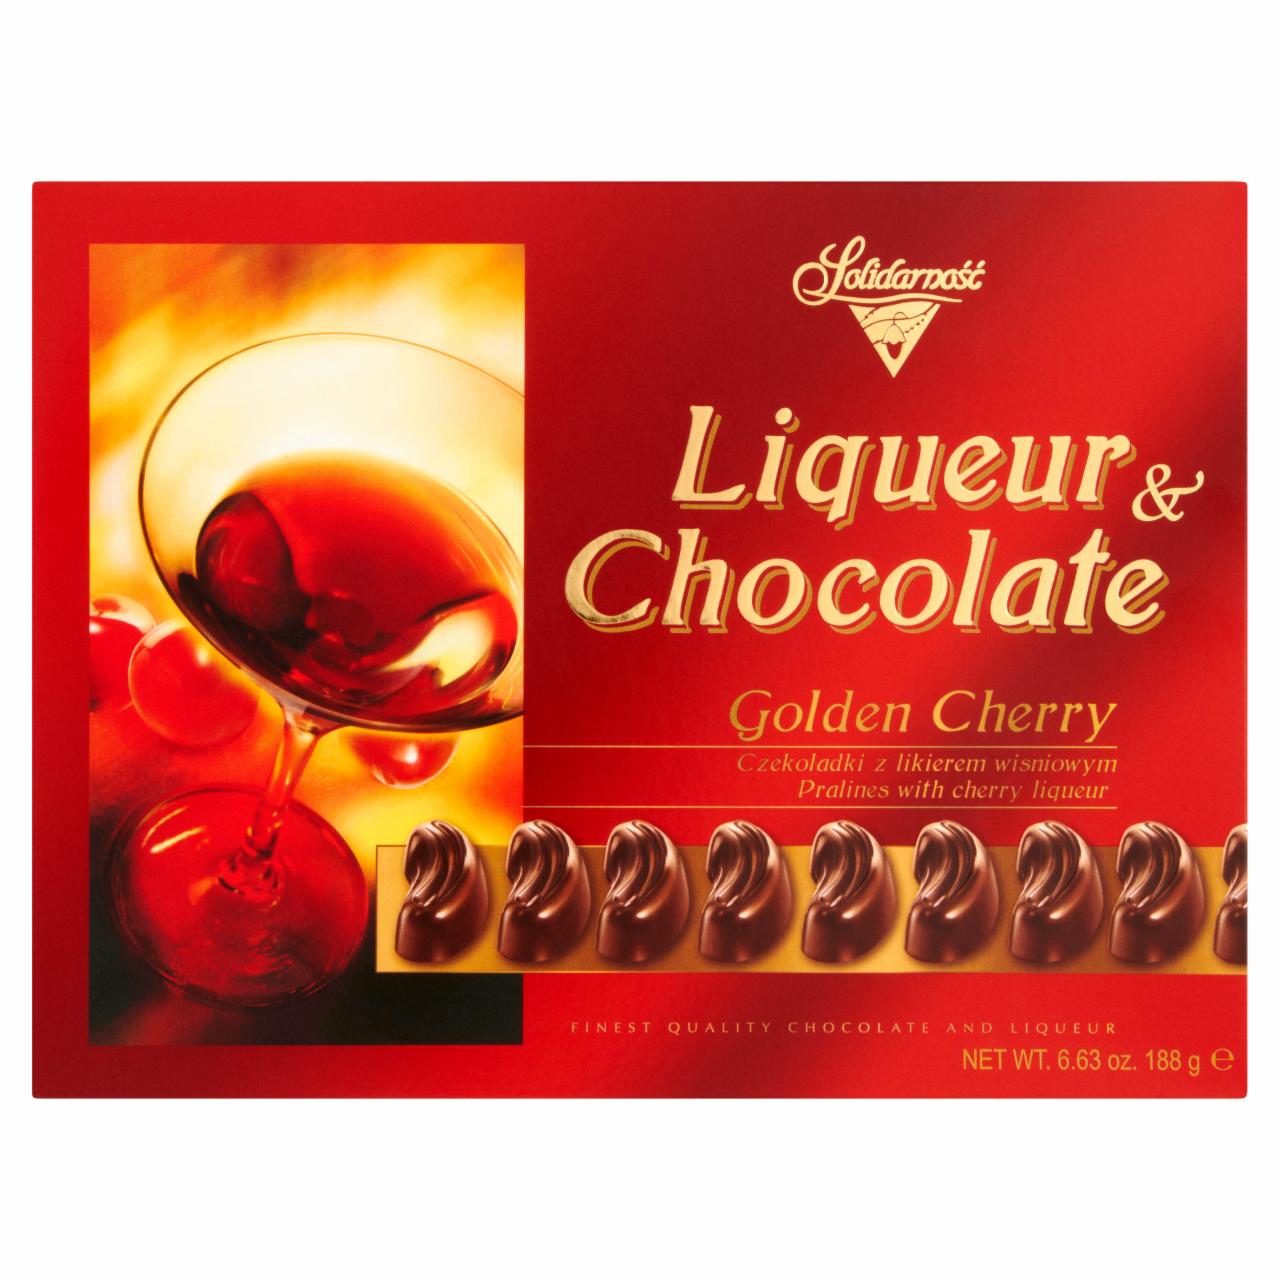 Zdjęcia - Solidarność Golden Cherry Liqueur and Chocolate Czekoladki z likierem wiśniowym Bombonierka 188 g